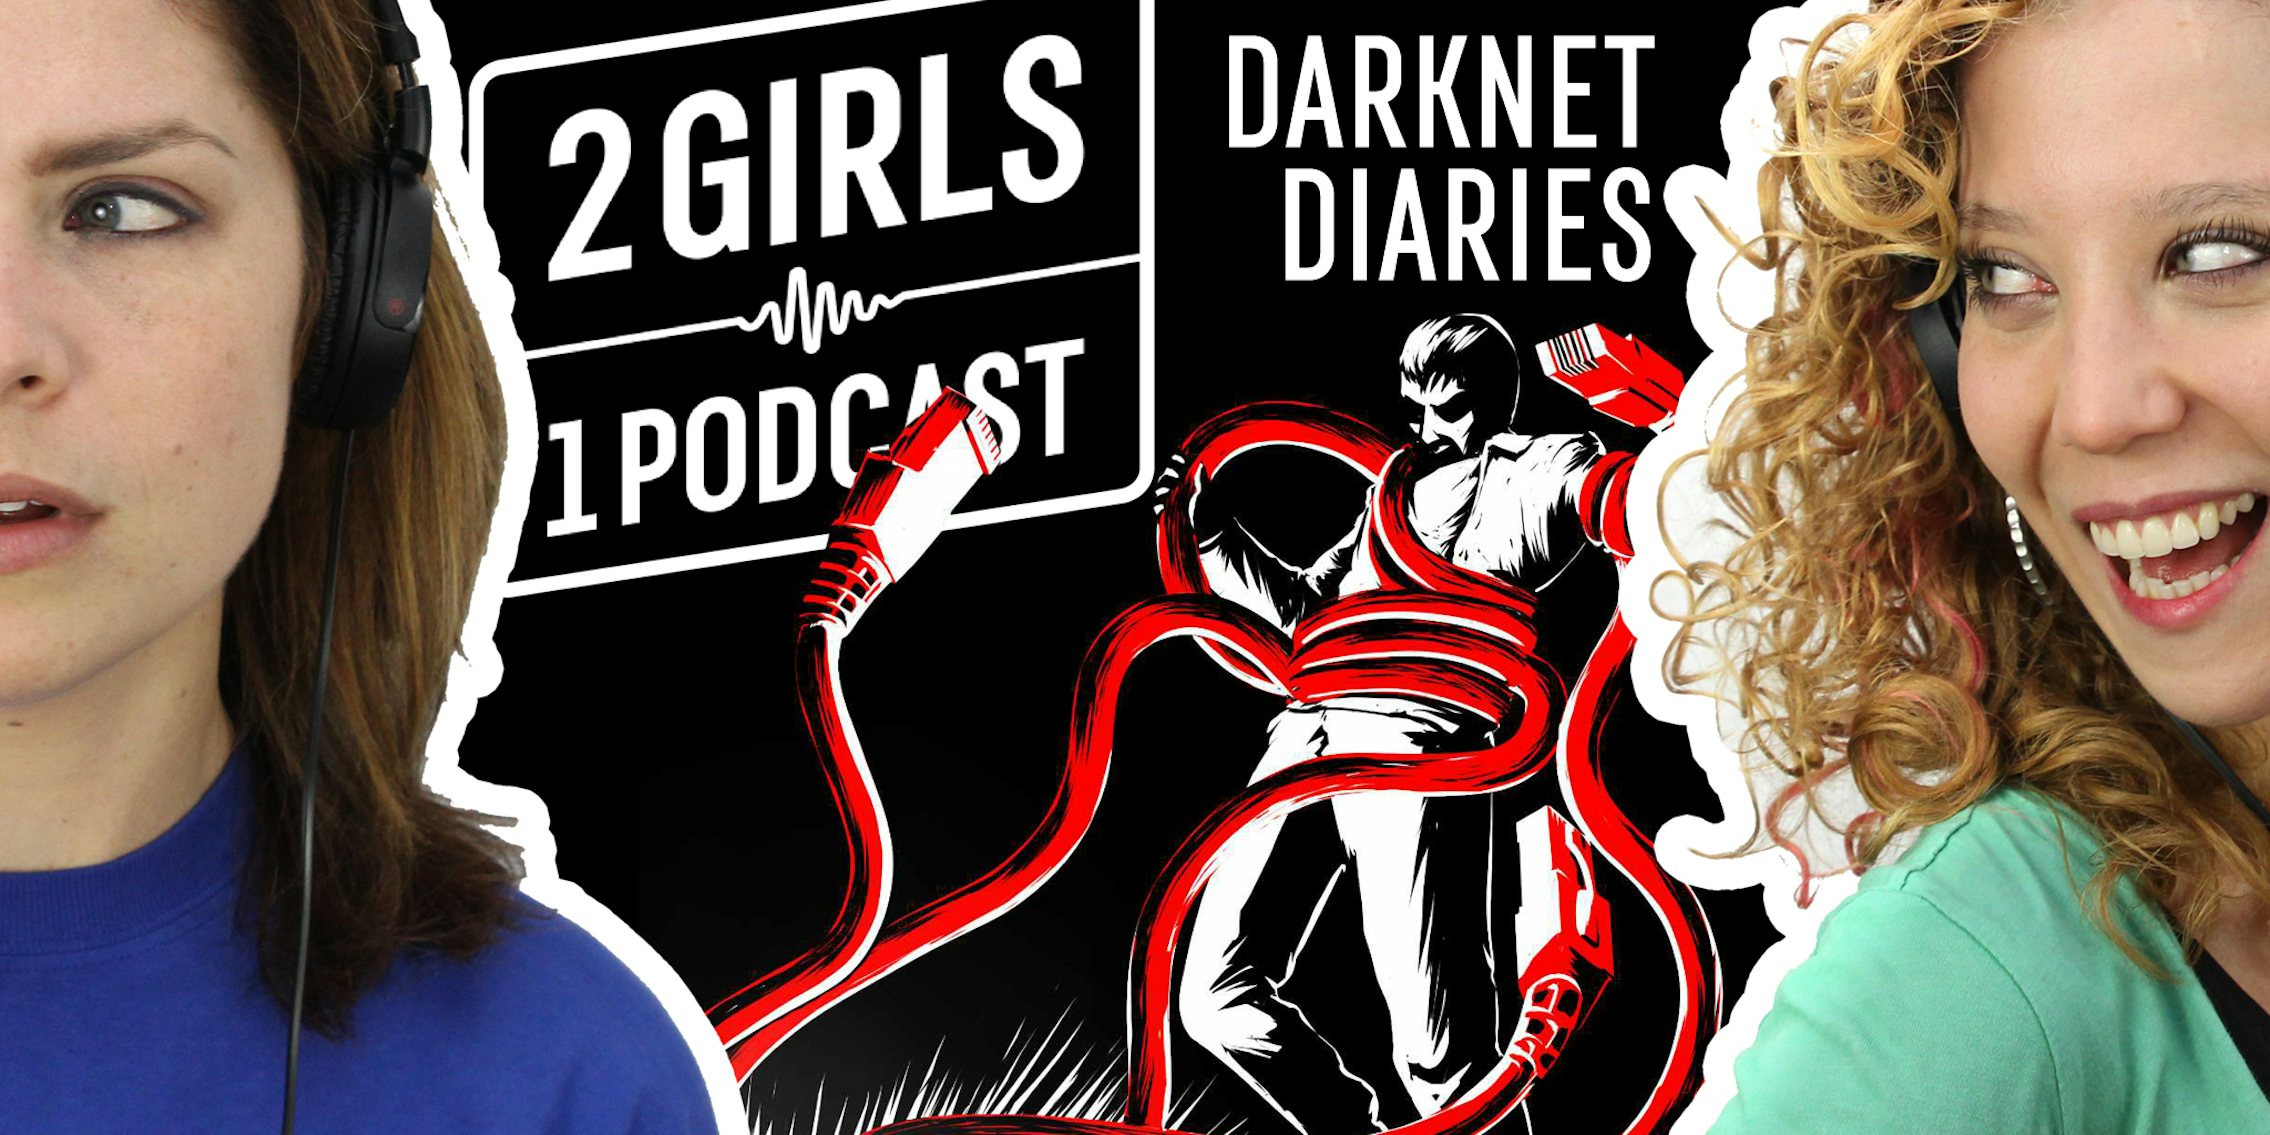 2 Girls 1 Podcast: DARKNET DIARIES